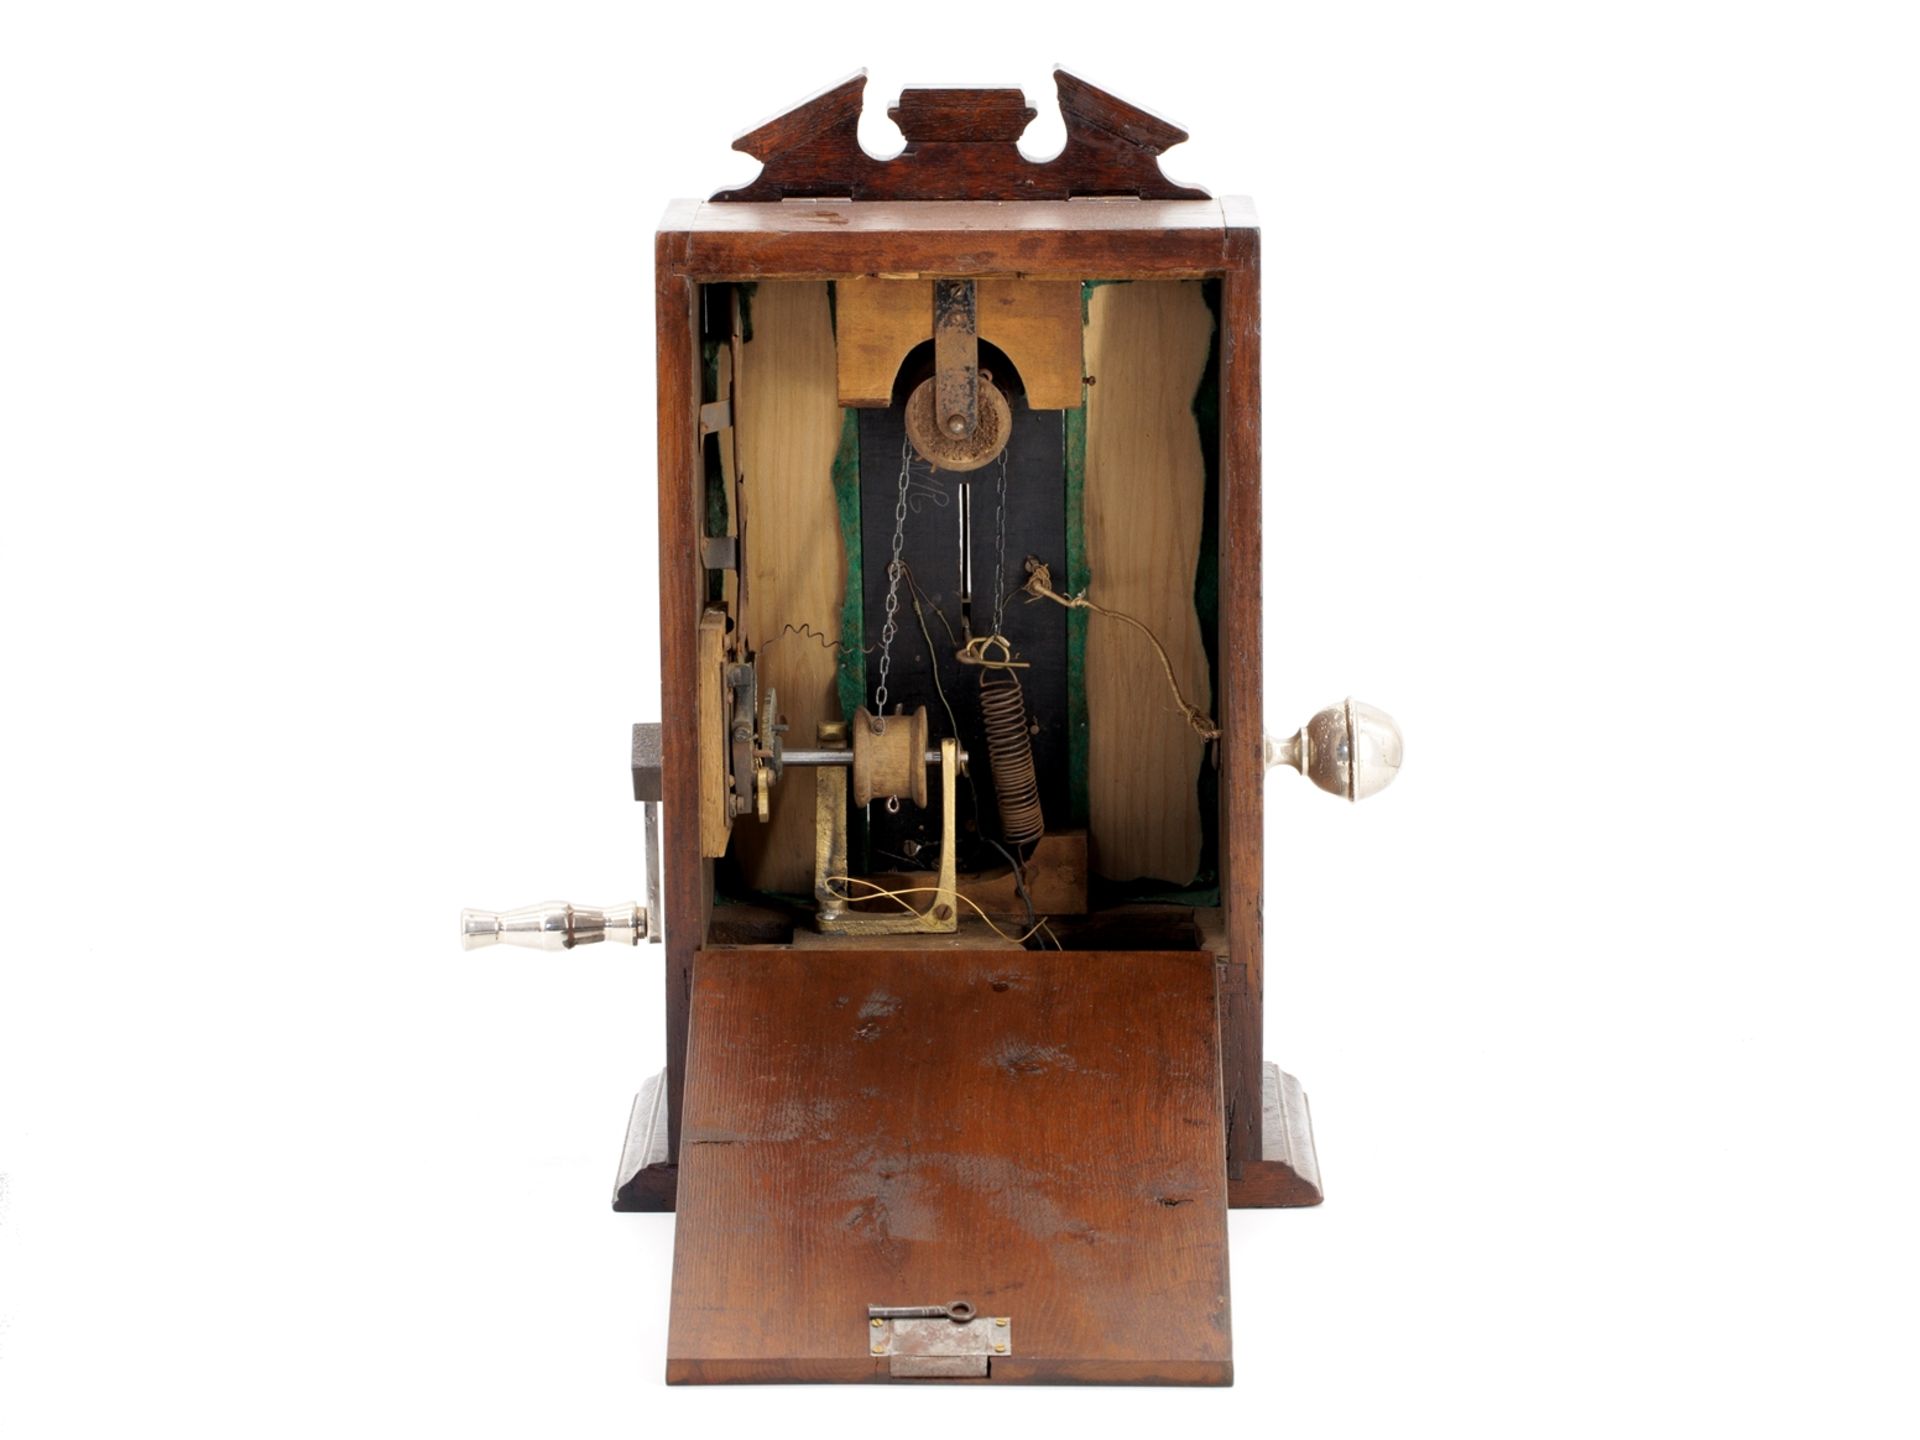 Elektrisierautomat mit Münzeinwurf, um 1905 - Bild 3 aus 6